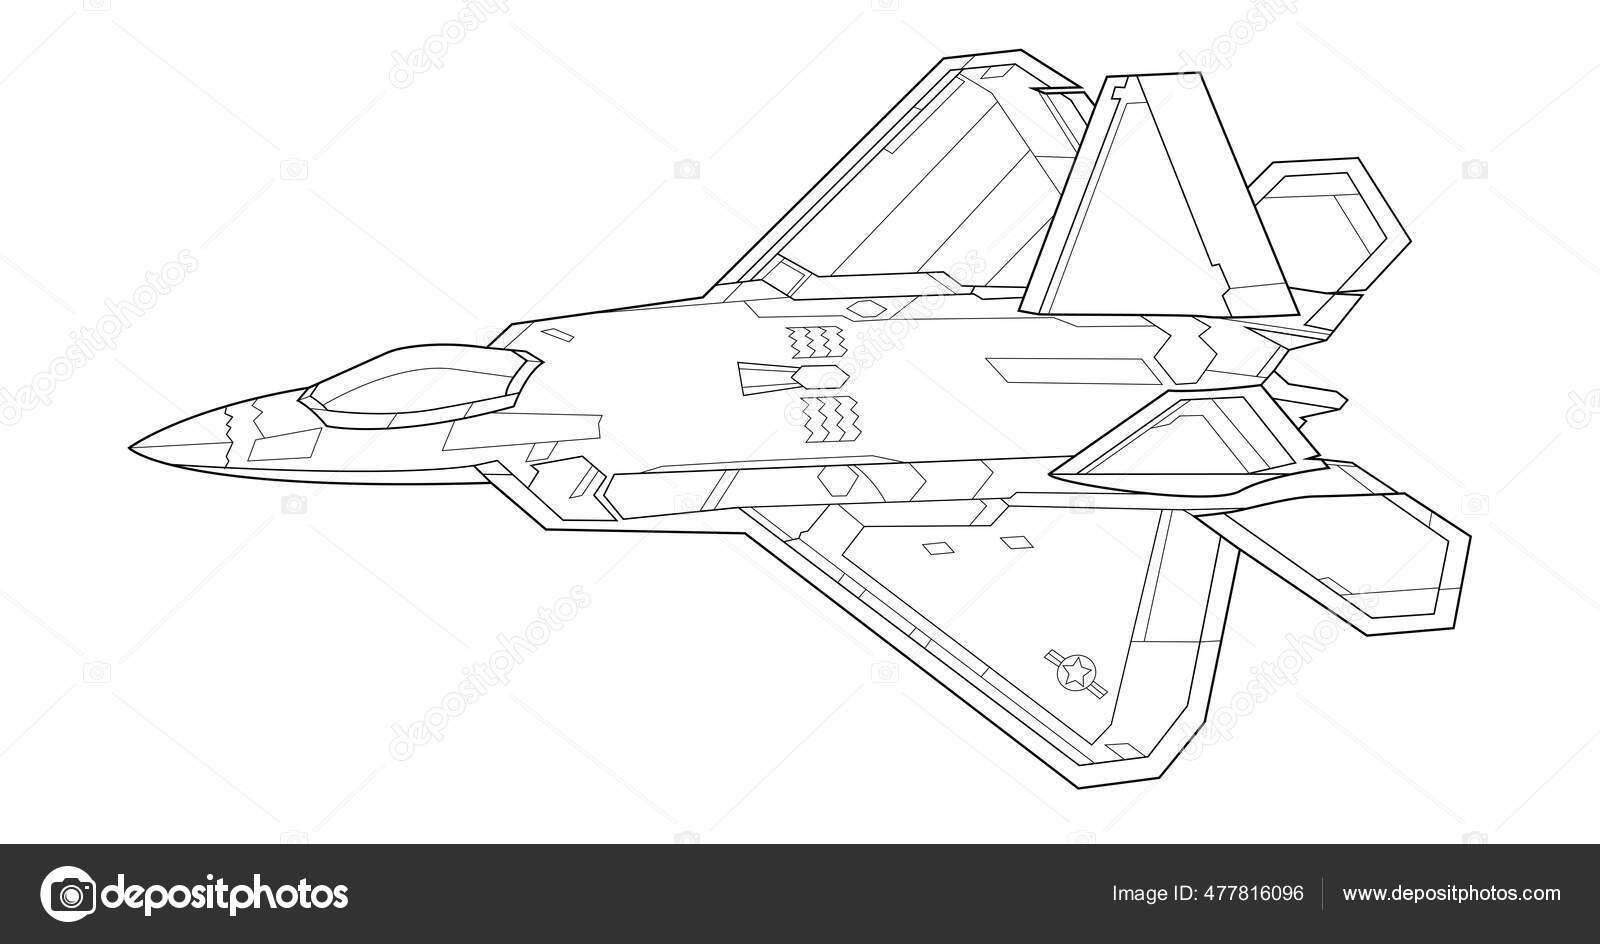 Dibujos de avion militar para colorear